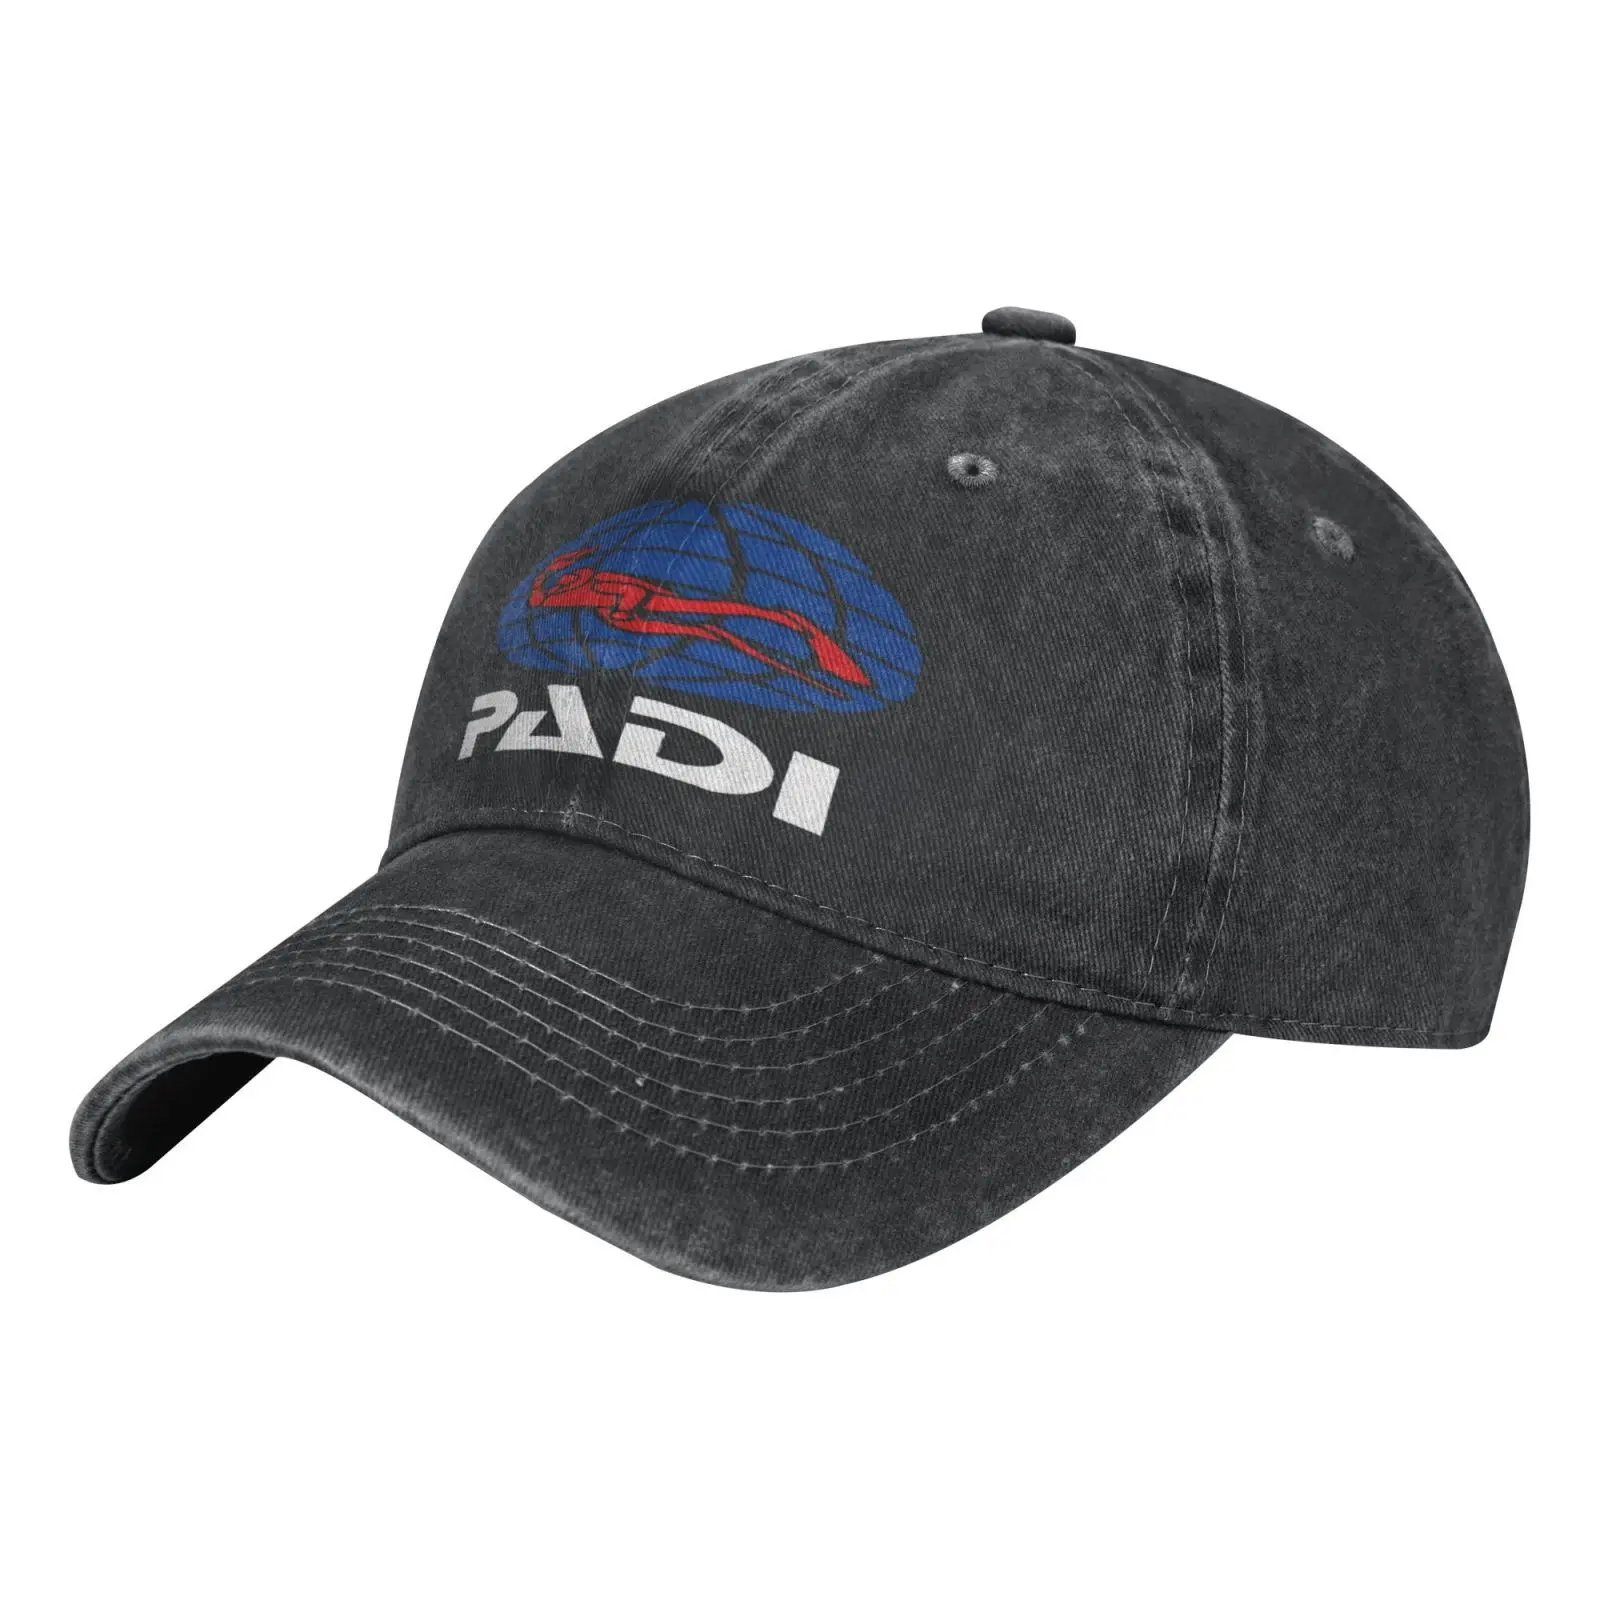 

The Star Padi Diving Division Machine Men's Baseball Cap Men's Berets Hat Men Balaclava Balaclava Hat For Girls Hat Men's Caps